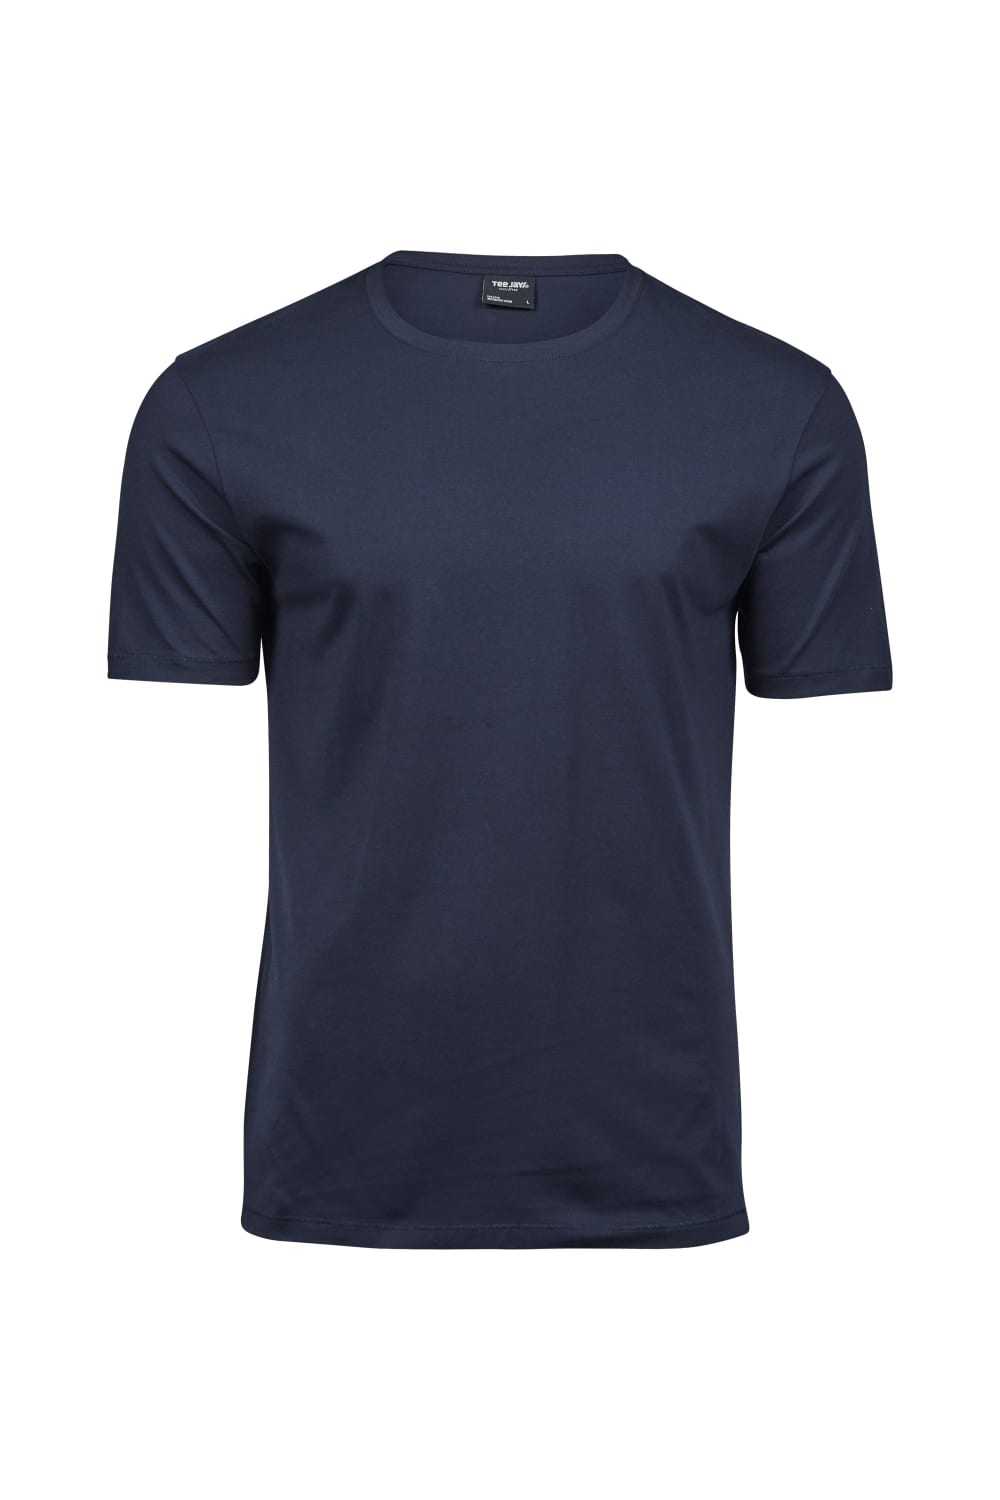 Tee Jays Mens Luxury Cotton T-Shirt (Navy)